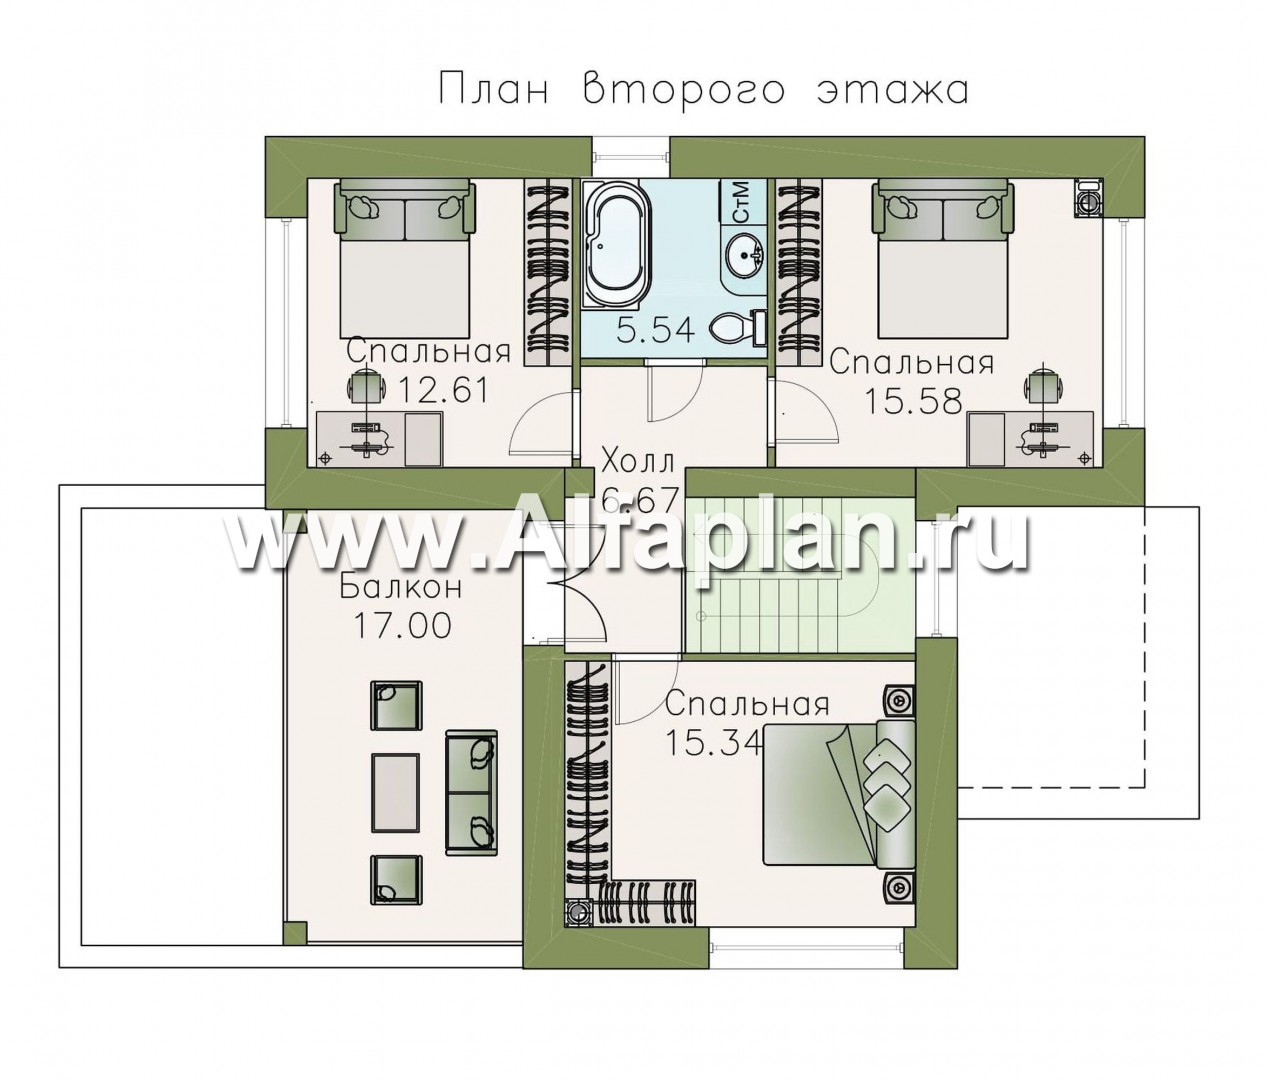 Проекты домов Альфаплан - Двухэтажный коттедж с односкатной кровлей - план проекта №2